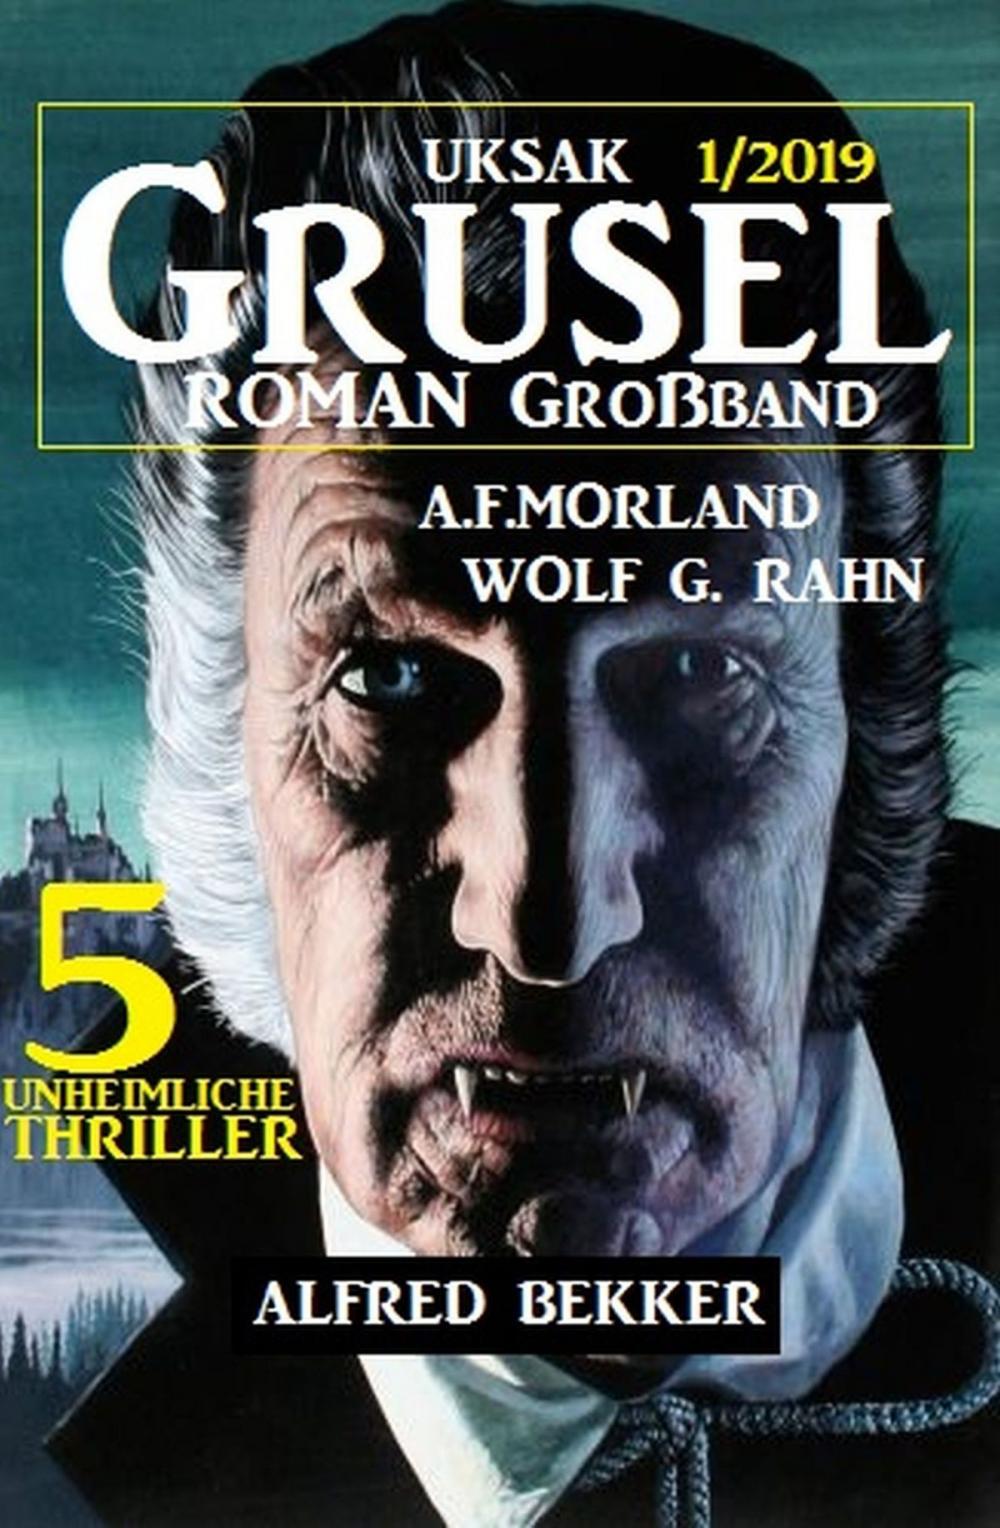 Big bigCover of Uksak Grusel-Roman Großband 1/2019 - 5 unheimliche Thriller